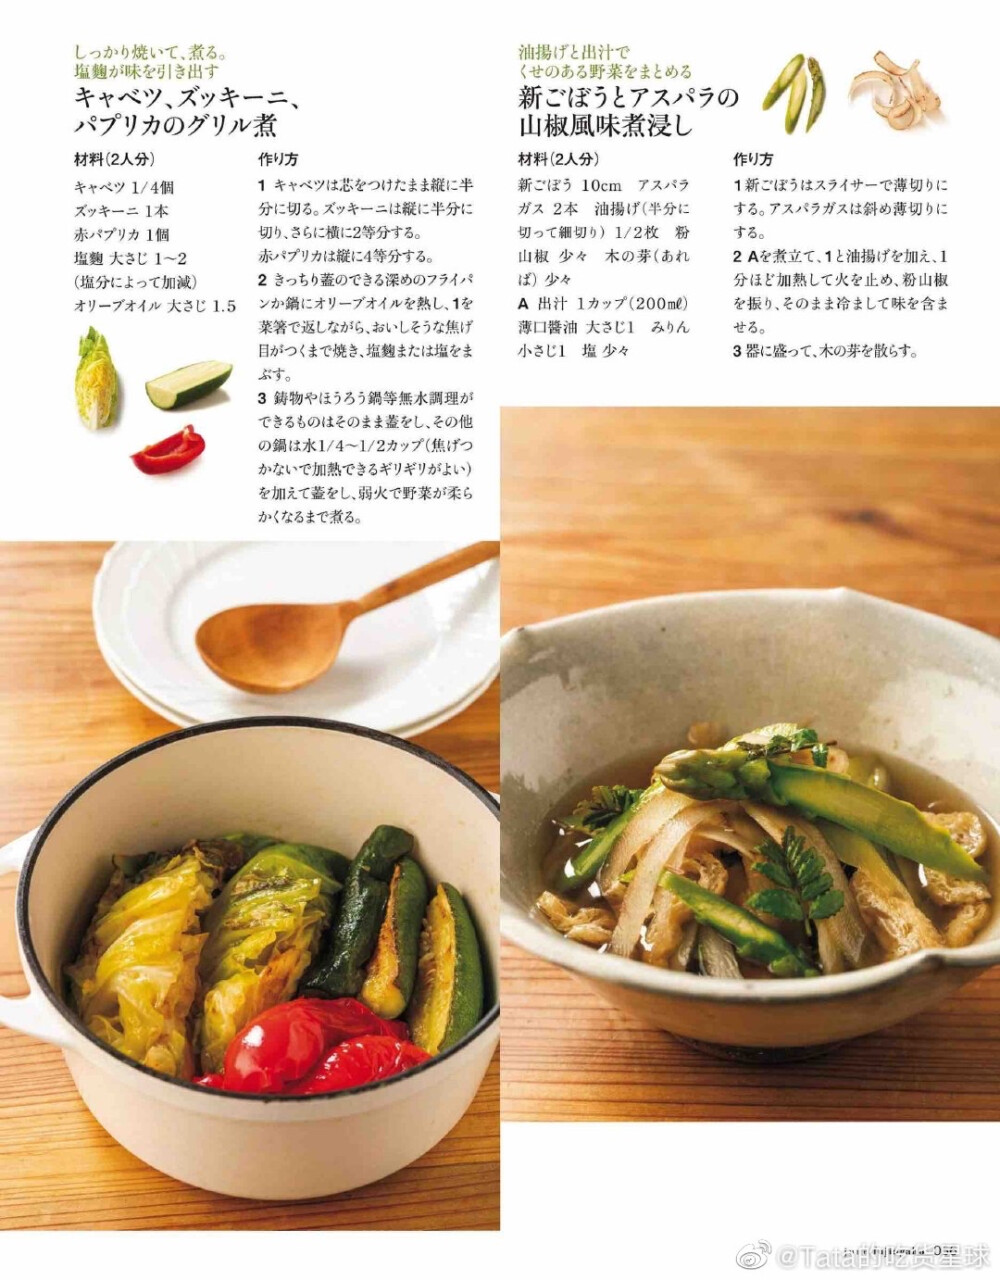 蔬菜料理的力量。日式摆盘的确值得一学。
from 杂志《妇人画报》 ​​​